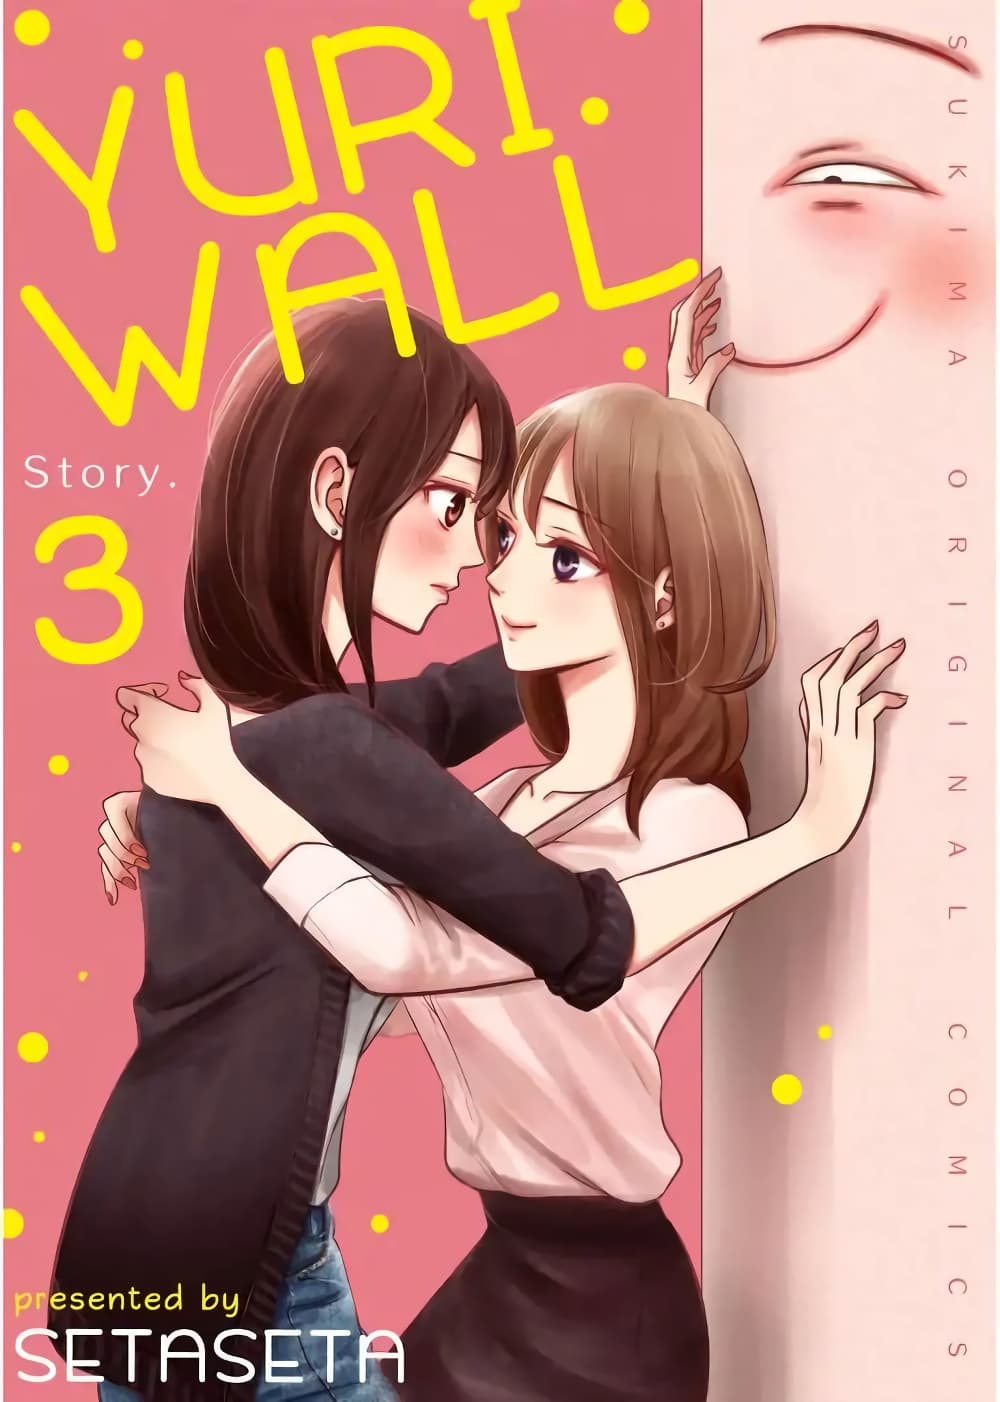 Yuri Wall 3 (1)